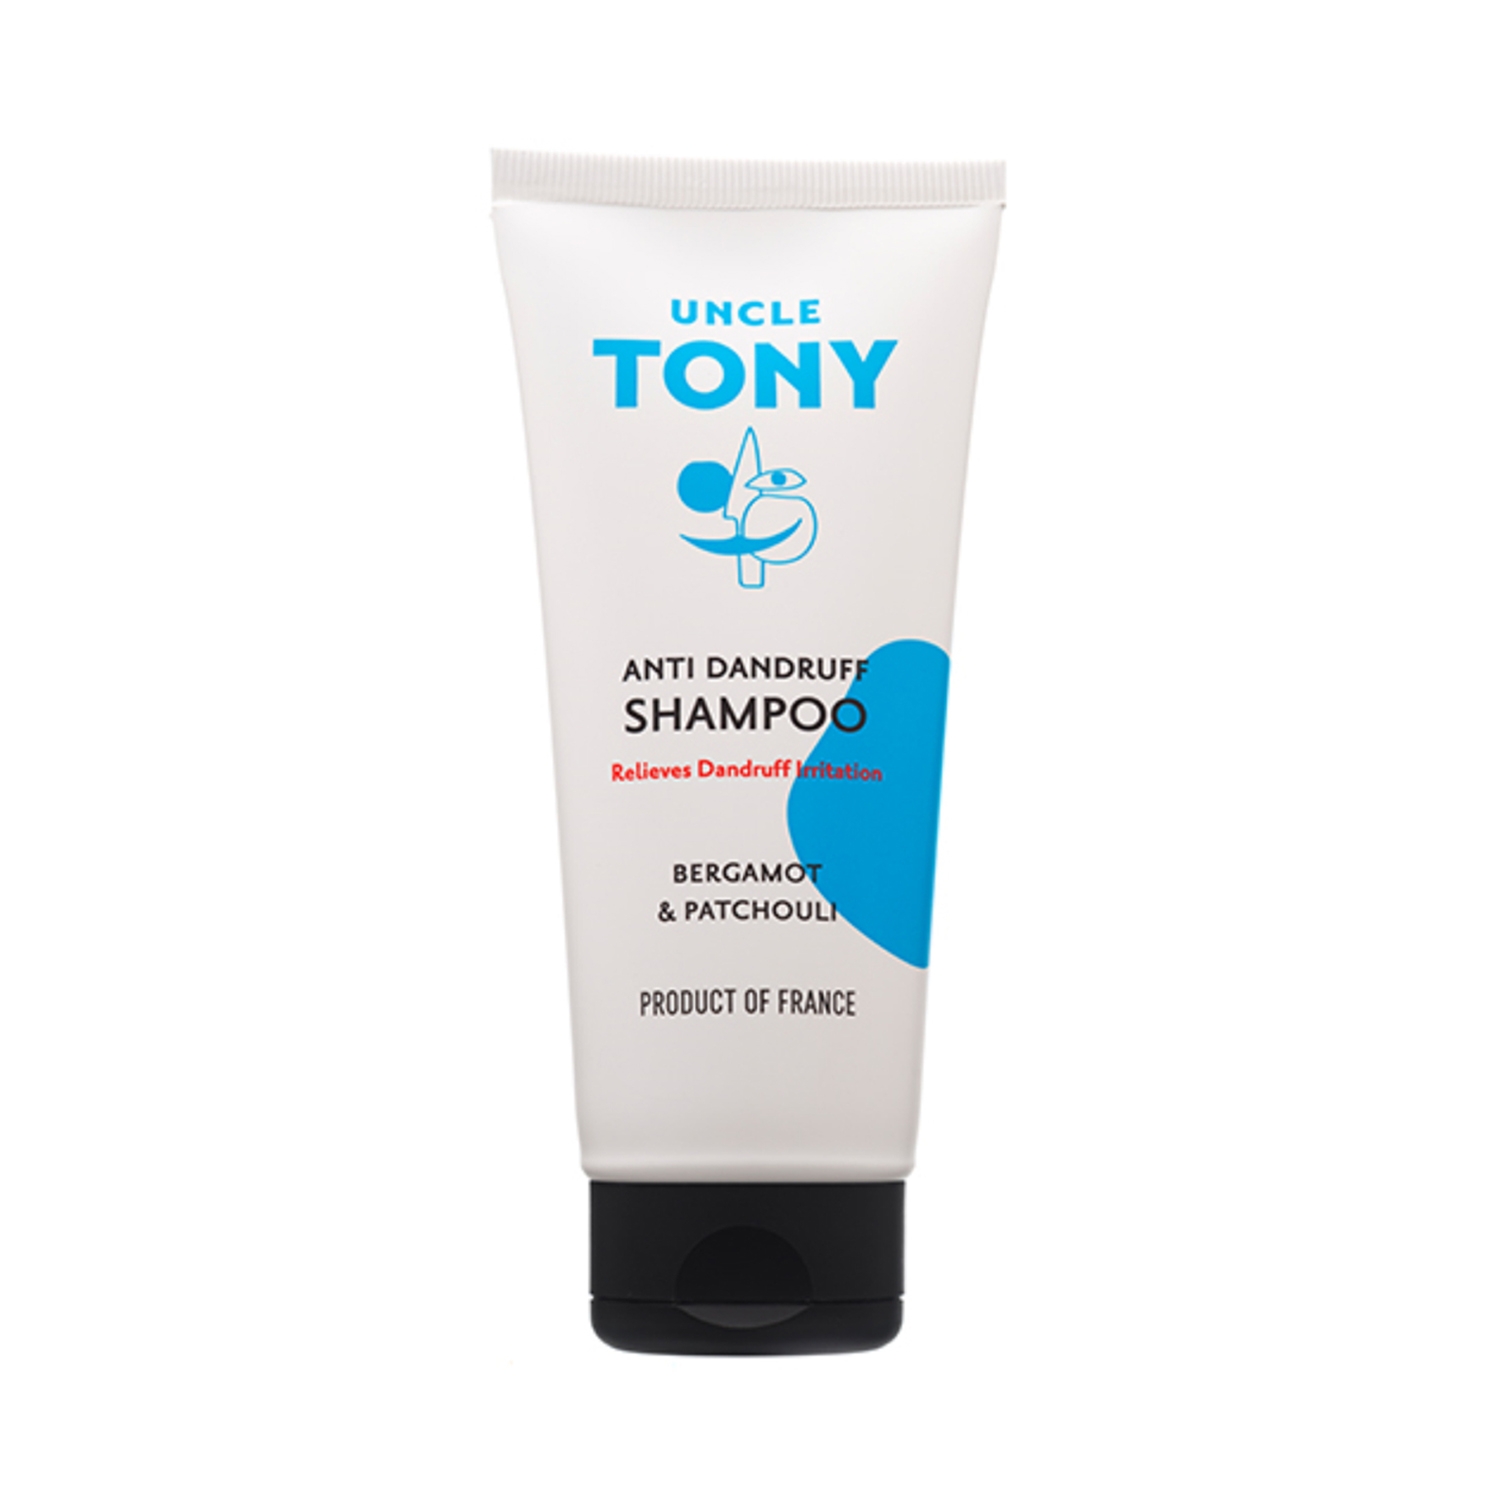 Uncle Tony Bergamot & Patchouli Anti Dandruff Shampoo (200ml)